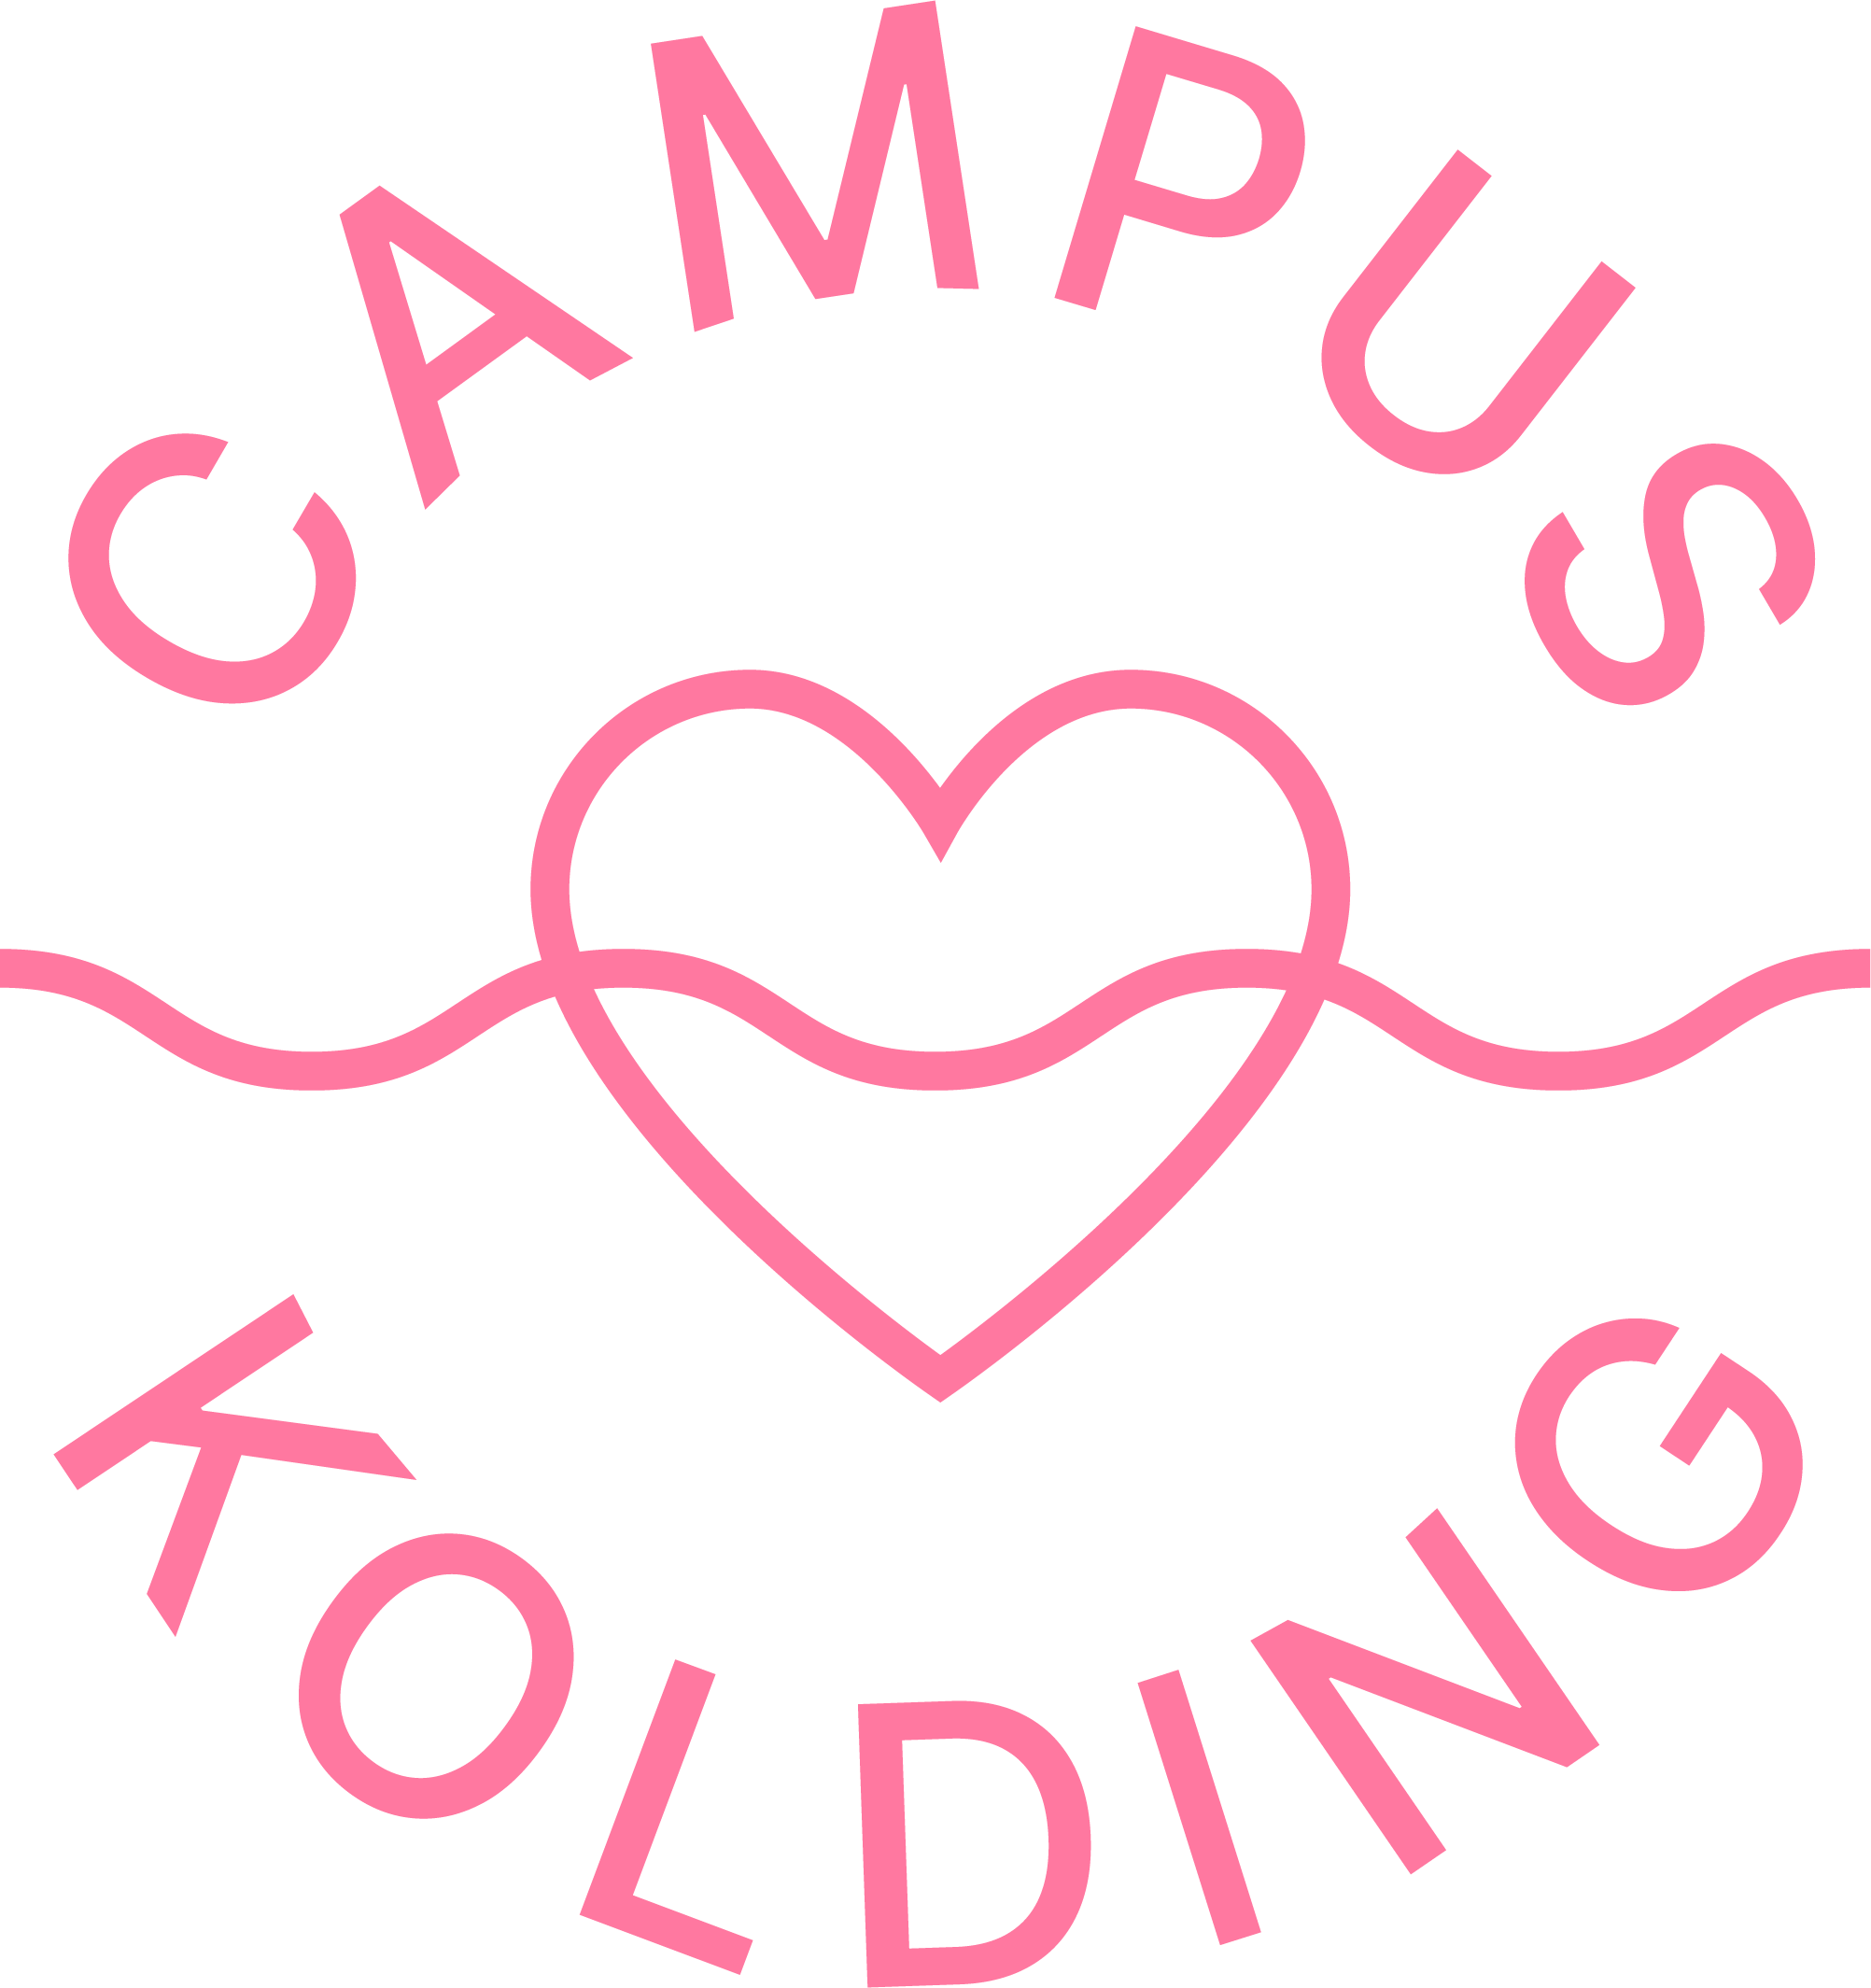 Campus_Kolding_Logo_RGB_Pink